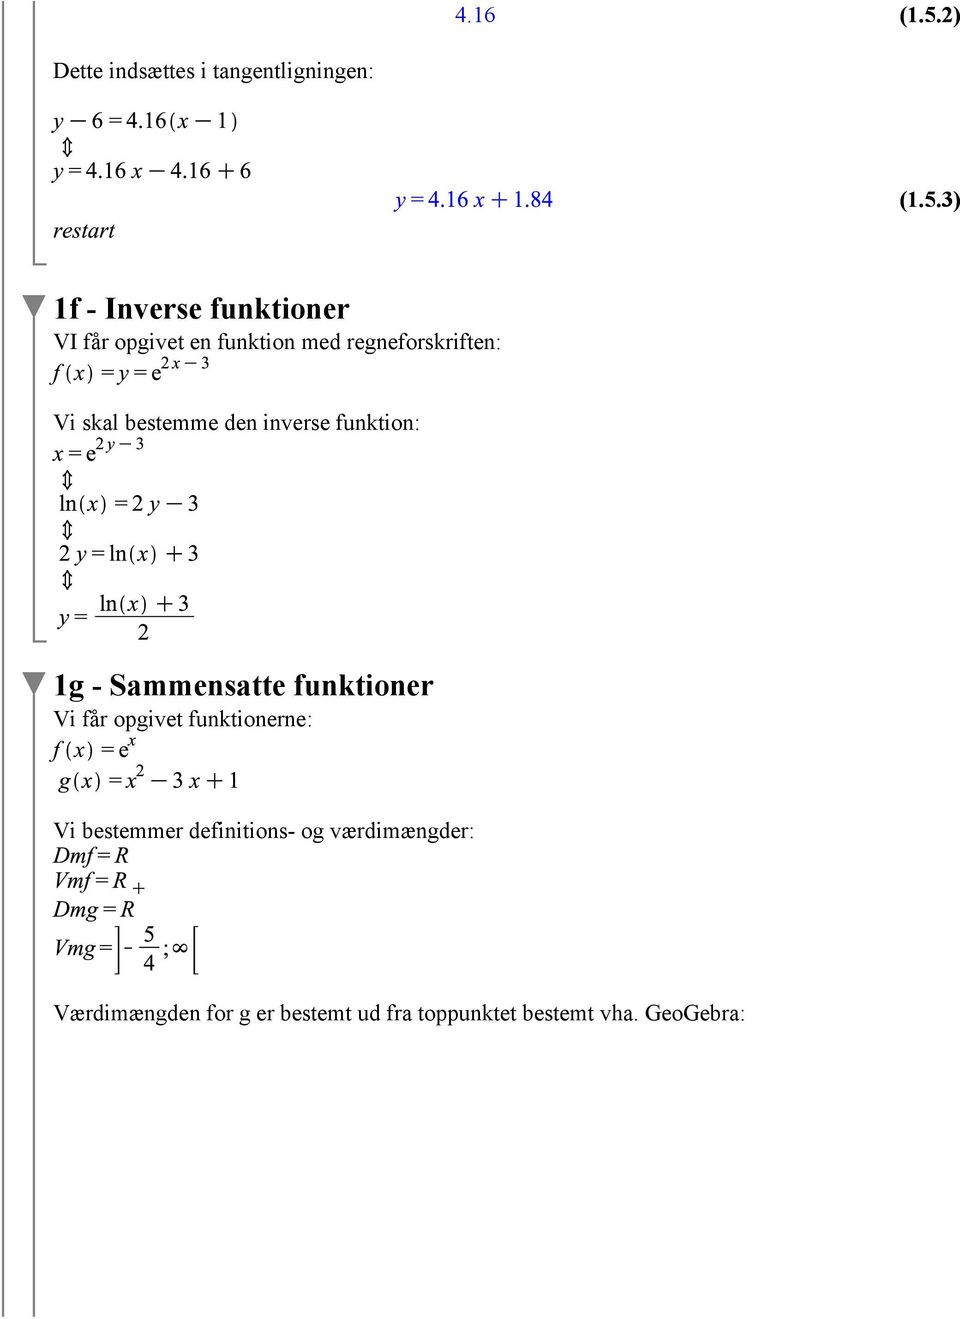 3) 1f - Inverse funktioner VI får opgivet en funktion med regneforskriften: Vi skal